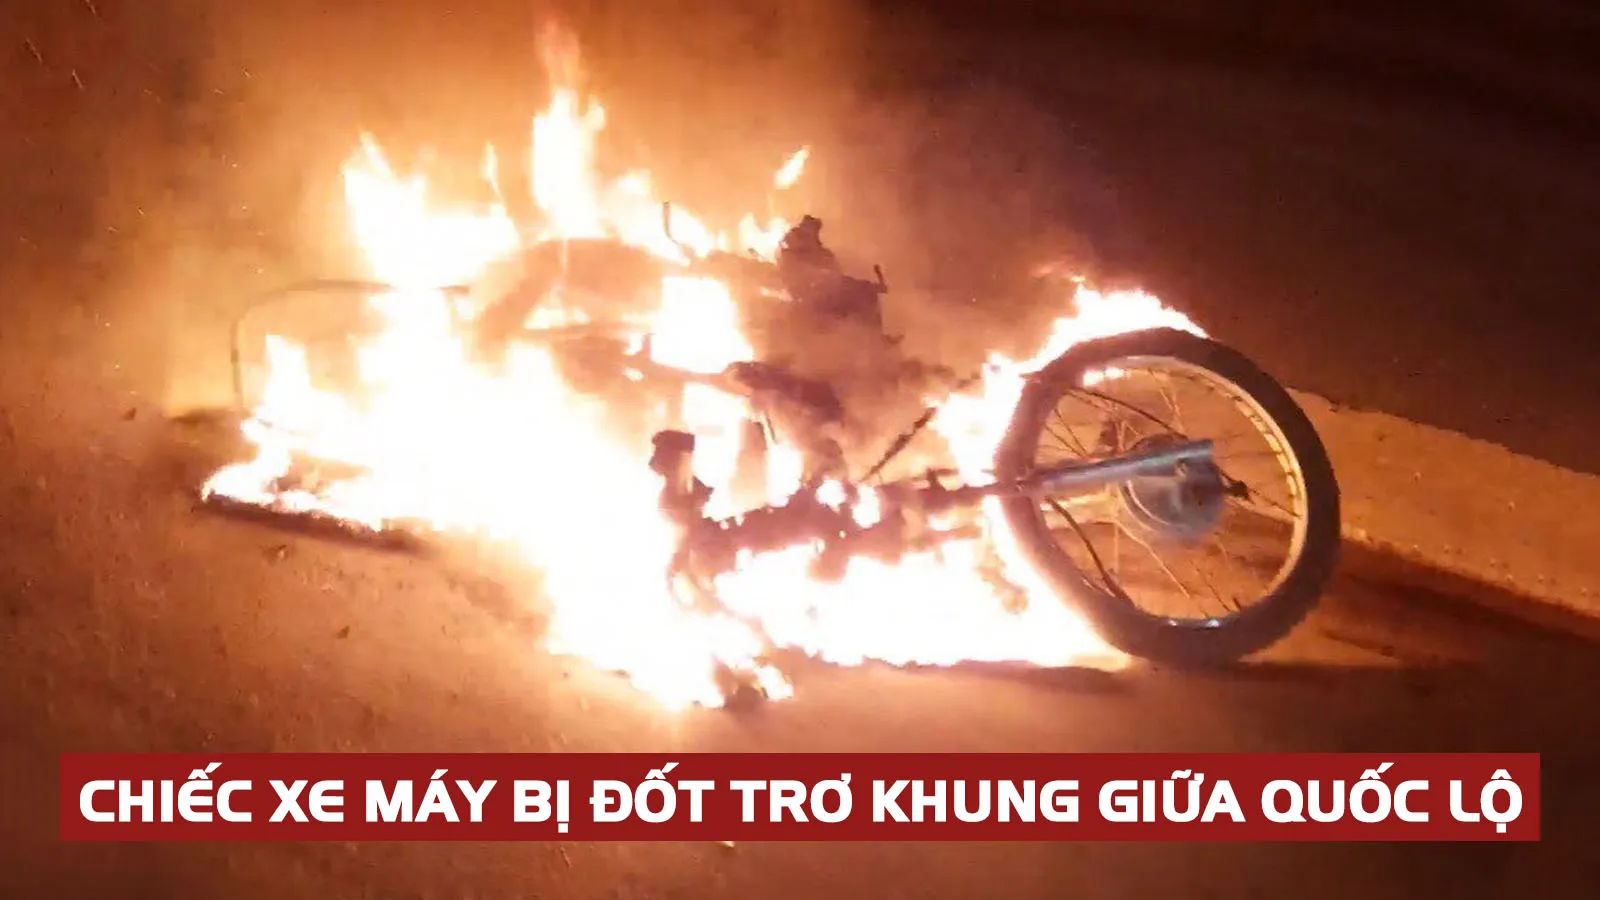 Thanh niên trộm xe máy rồi châm lửa đốt tại Long An